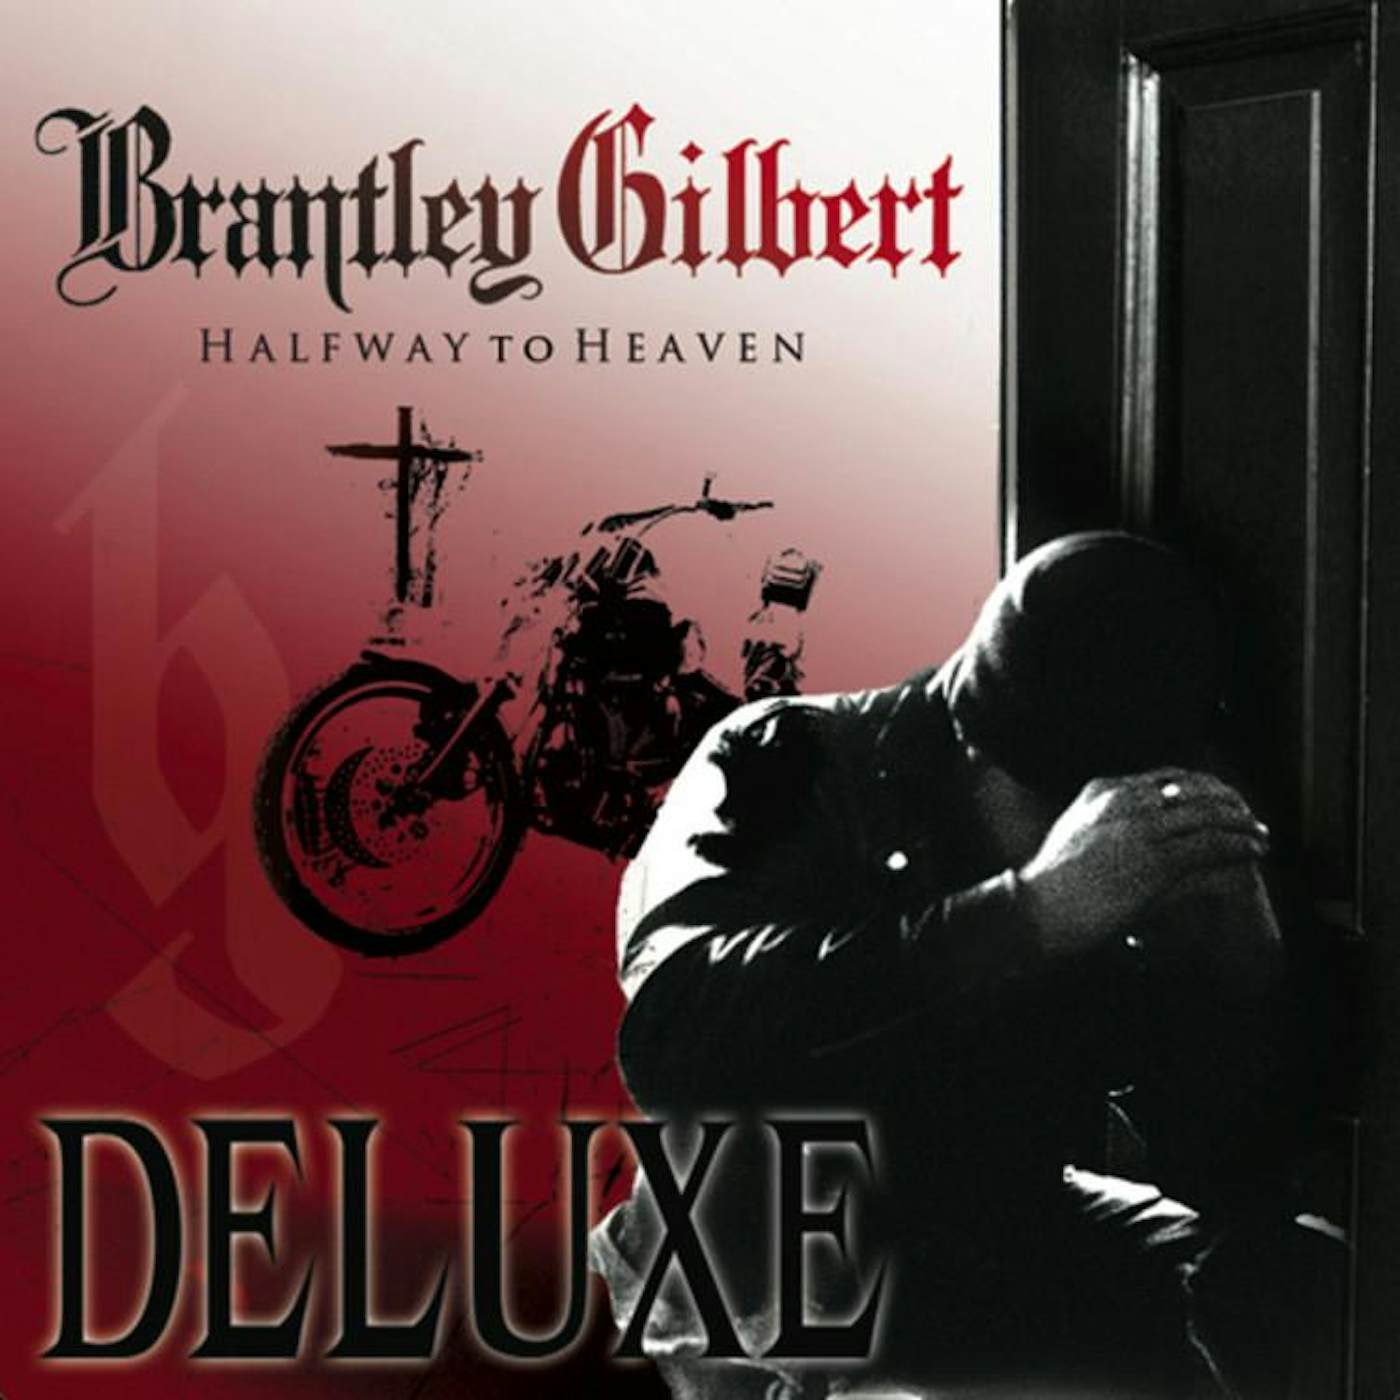 Brantley Gilbert - Halfway to Heaven Deluxe - Vinyl